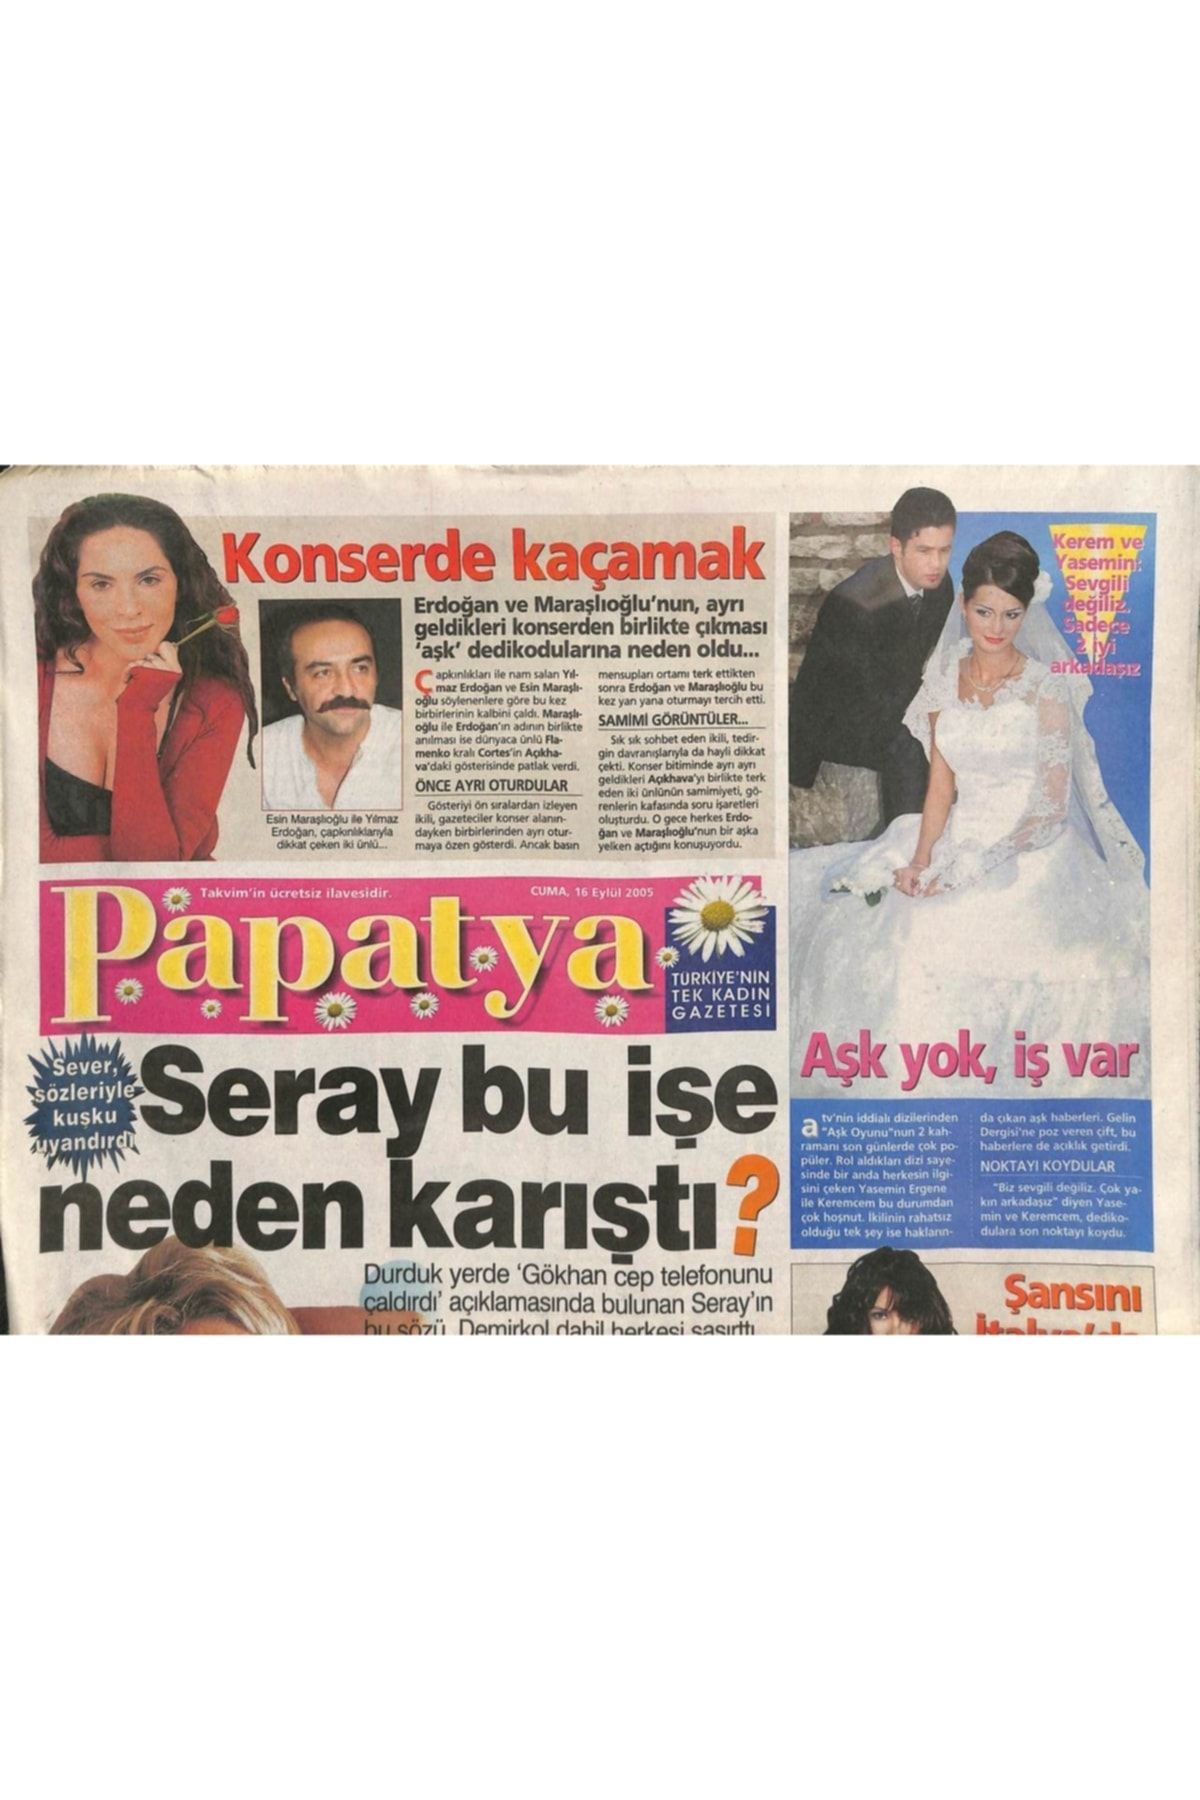 Gökçe Koleksiyon Takvim Gazetesi Papatya Eki 16 Eylül 2005 - Seray Sever Sözleriyle Kuşku Uyandırdı Gz109386